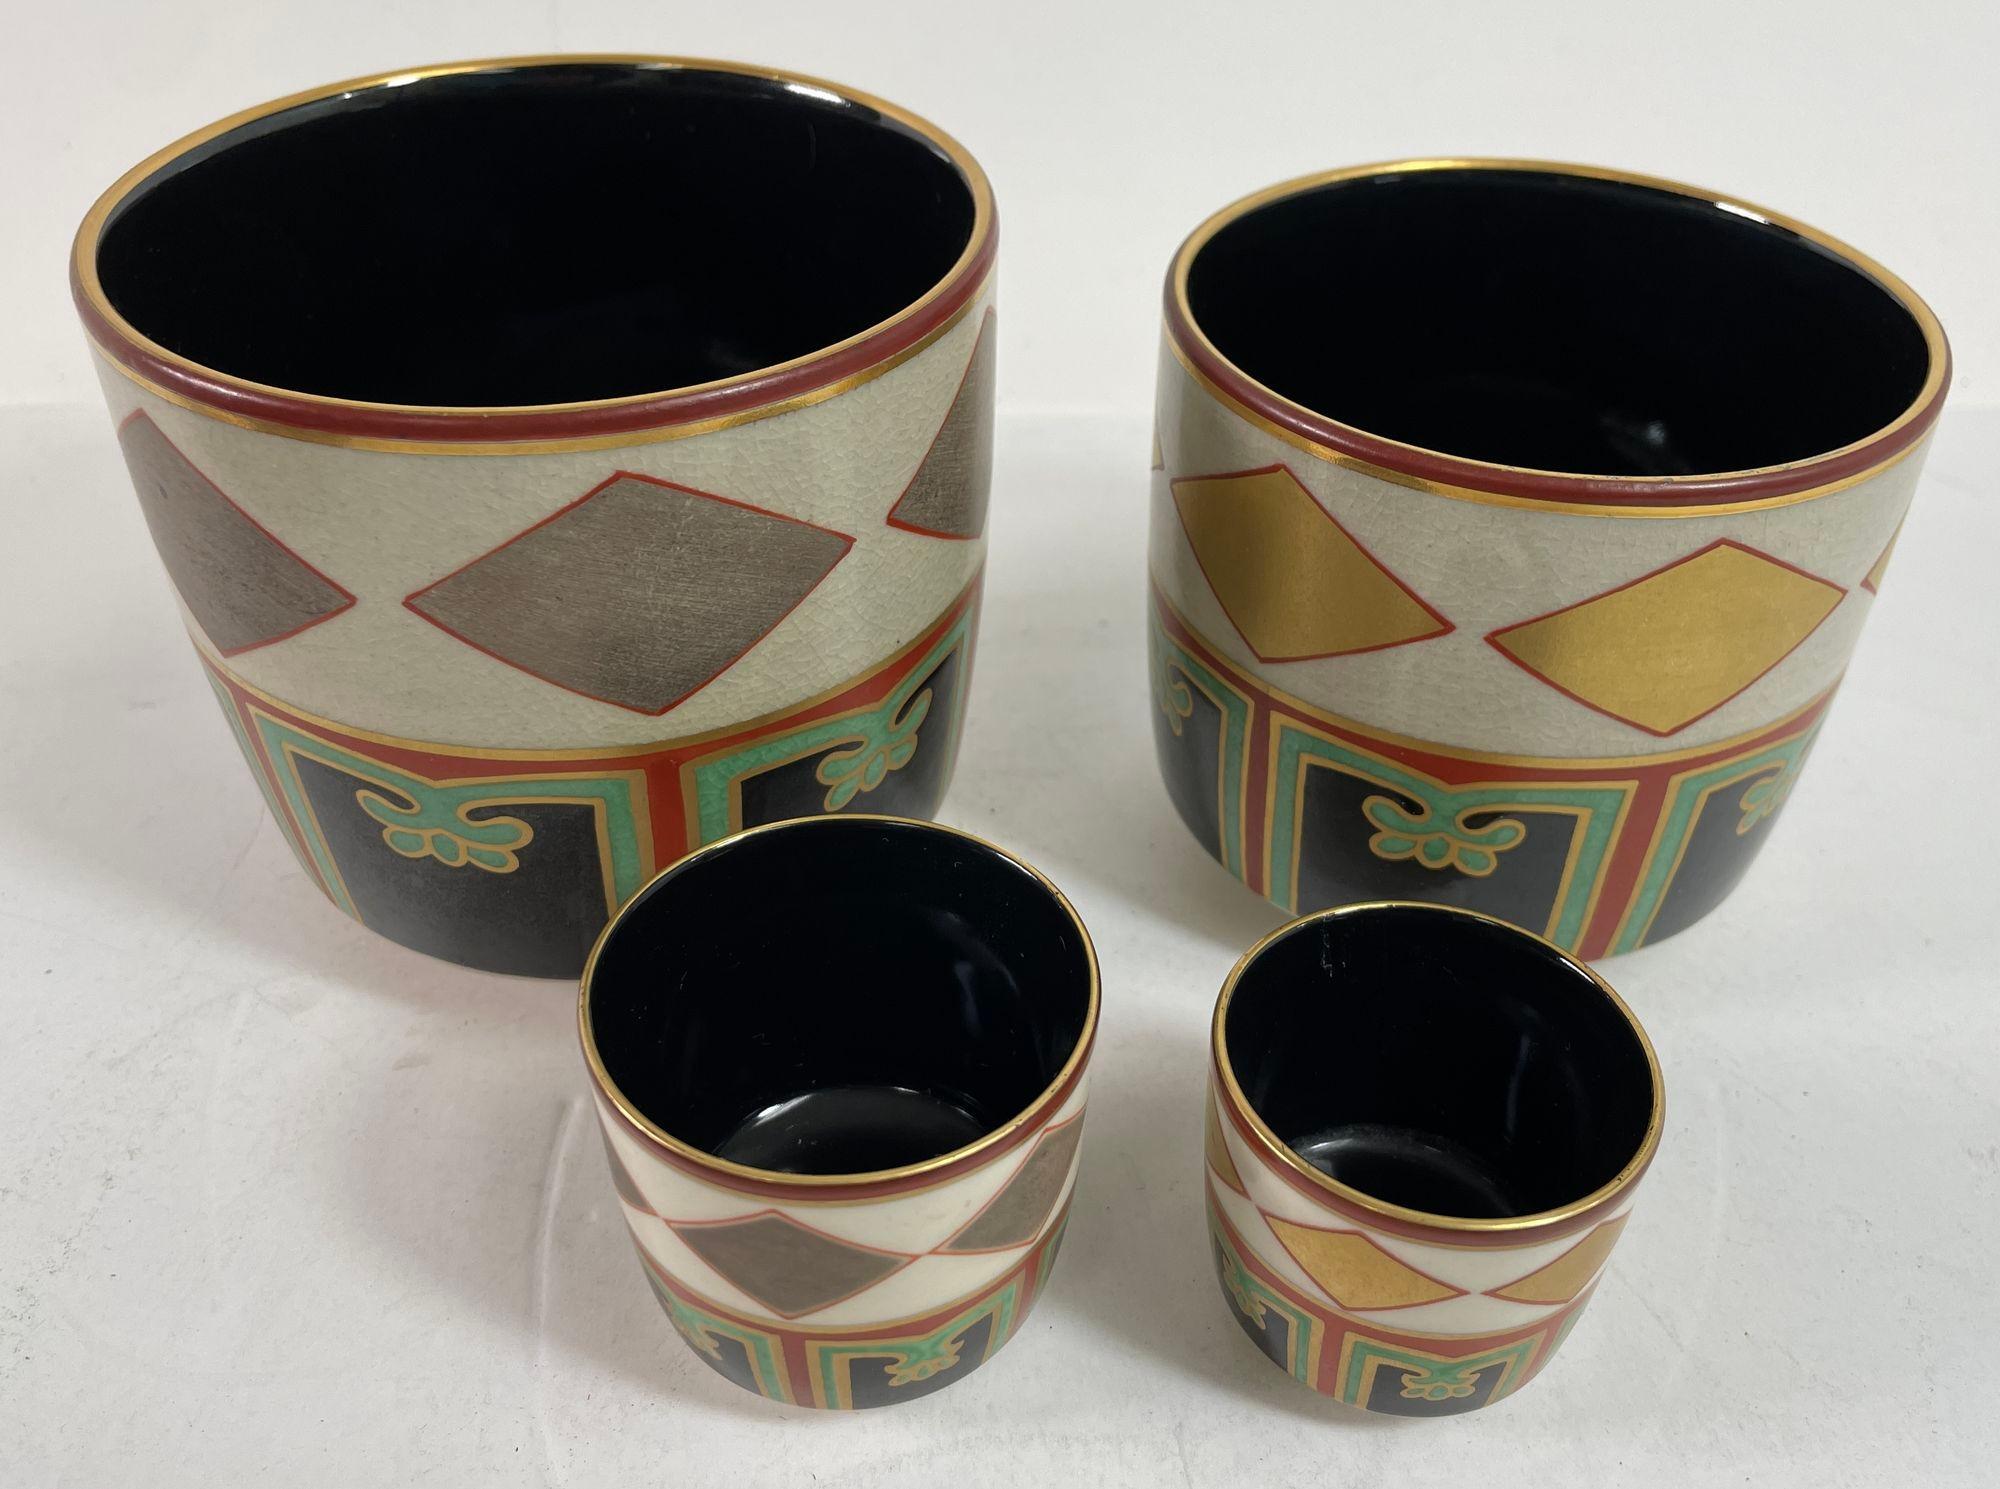 Vintage Kuniyaki Tee Schalen und Tablett Set nach Nonomura Ninsei Japan.
Kuniyaki Teeschalen-Set, nach Ninsei.
Kuniyaki Teeschalen und Tablett Japan schwarzes Porzellan innen und verziert mit Gold, Rot, Grün und Silber.
Das Set besteht aus 4 Schalen